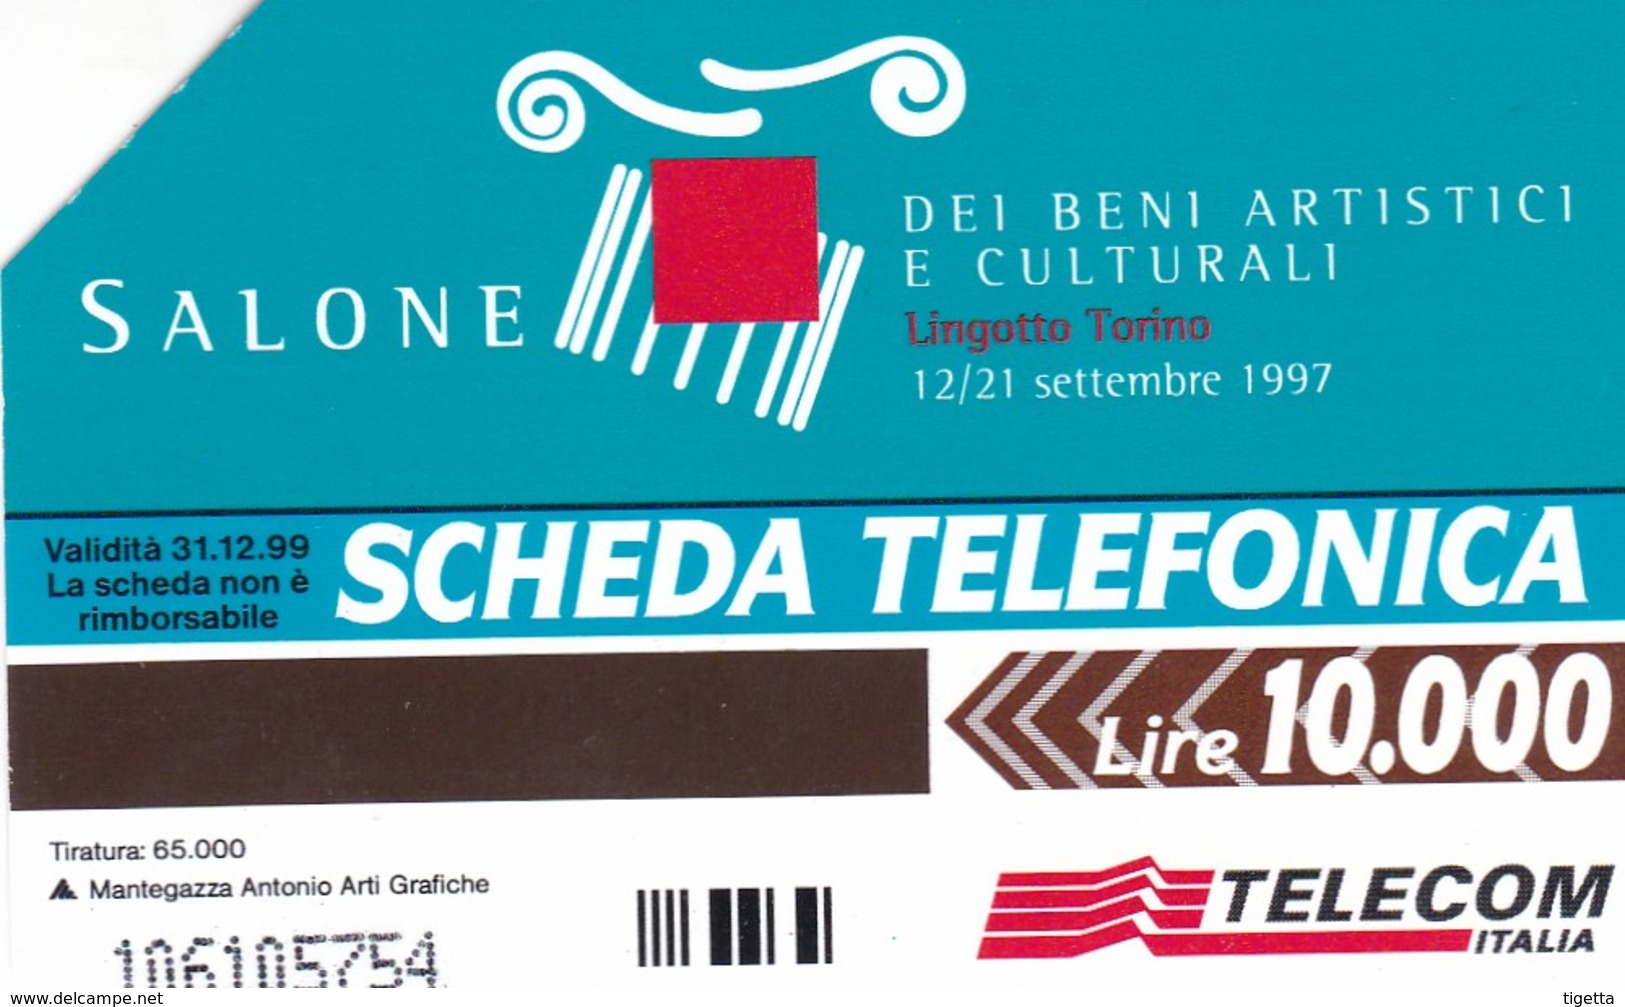 SCHEDA TELEFONICA  SALONE DEI BENI ARTISTICI E CULTURALI TORINO   SCADENZA 31/12/1999 USATA - Public Special Or Commemorative